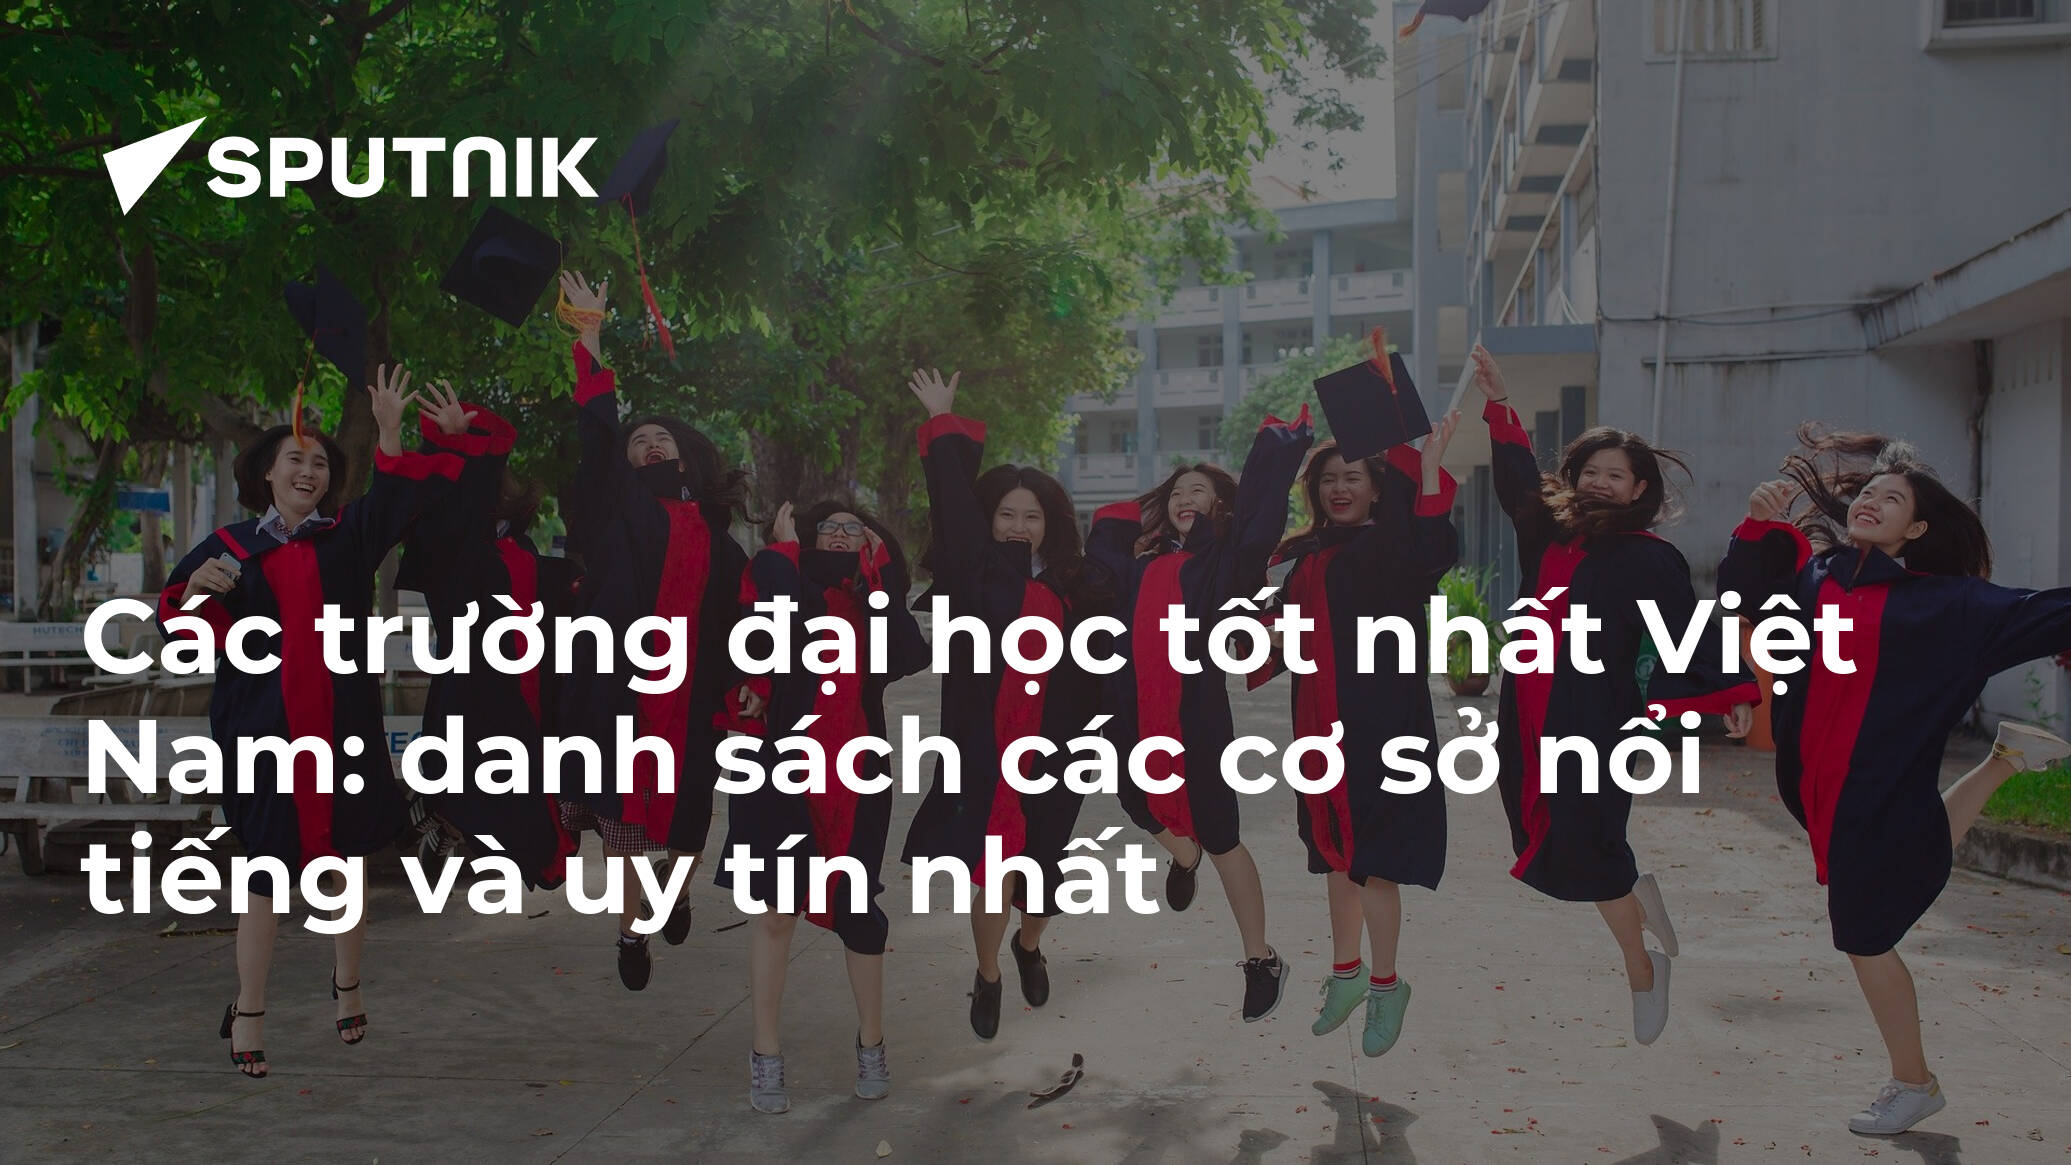 Các trường đại học tốt nhất Việt Nam: danh sách các cơ sở nổi tiếng và uy tín nhất